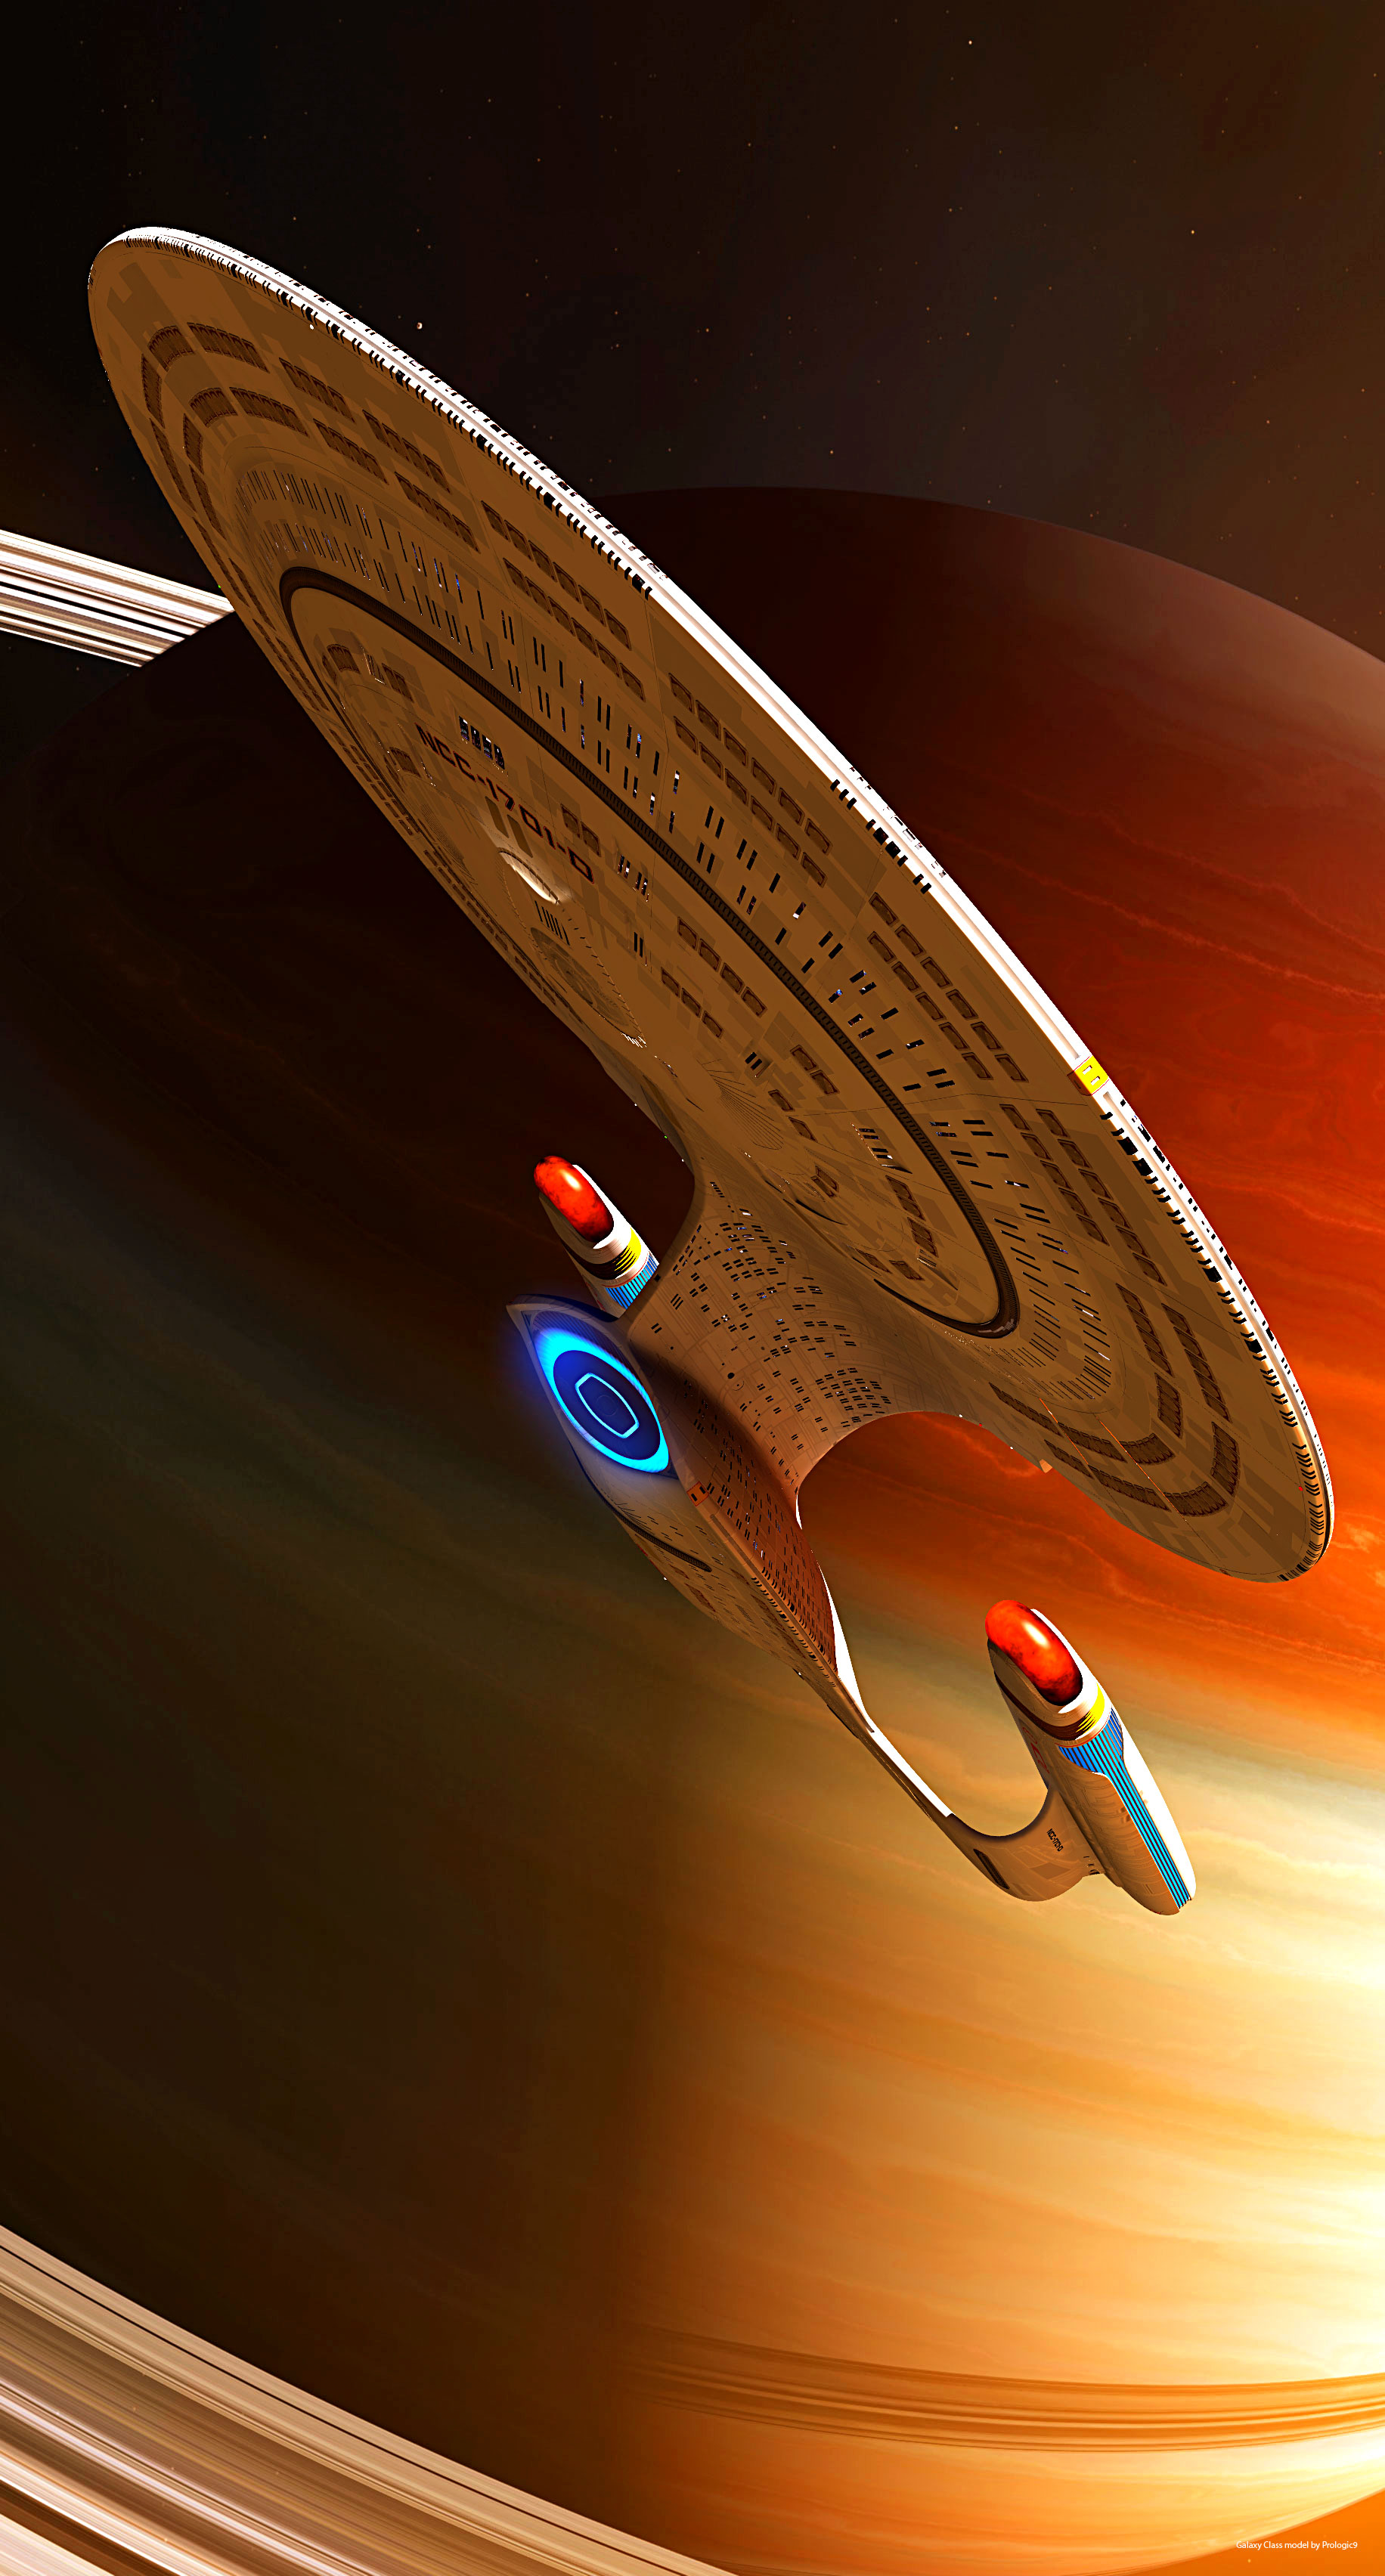 Enterprise D by GrahamTG [1832x3408] : StarshipPorn